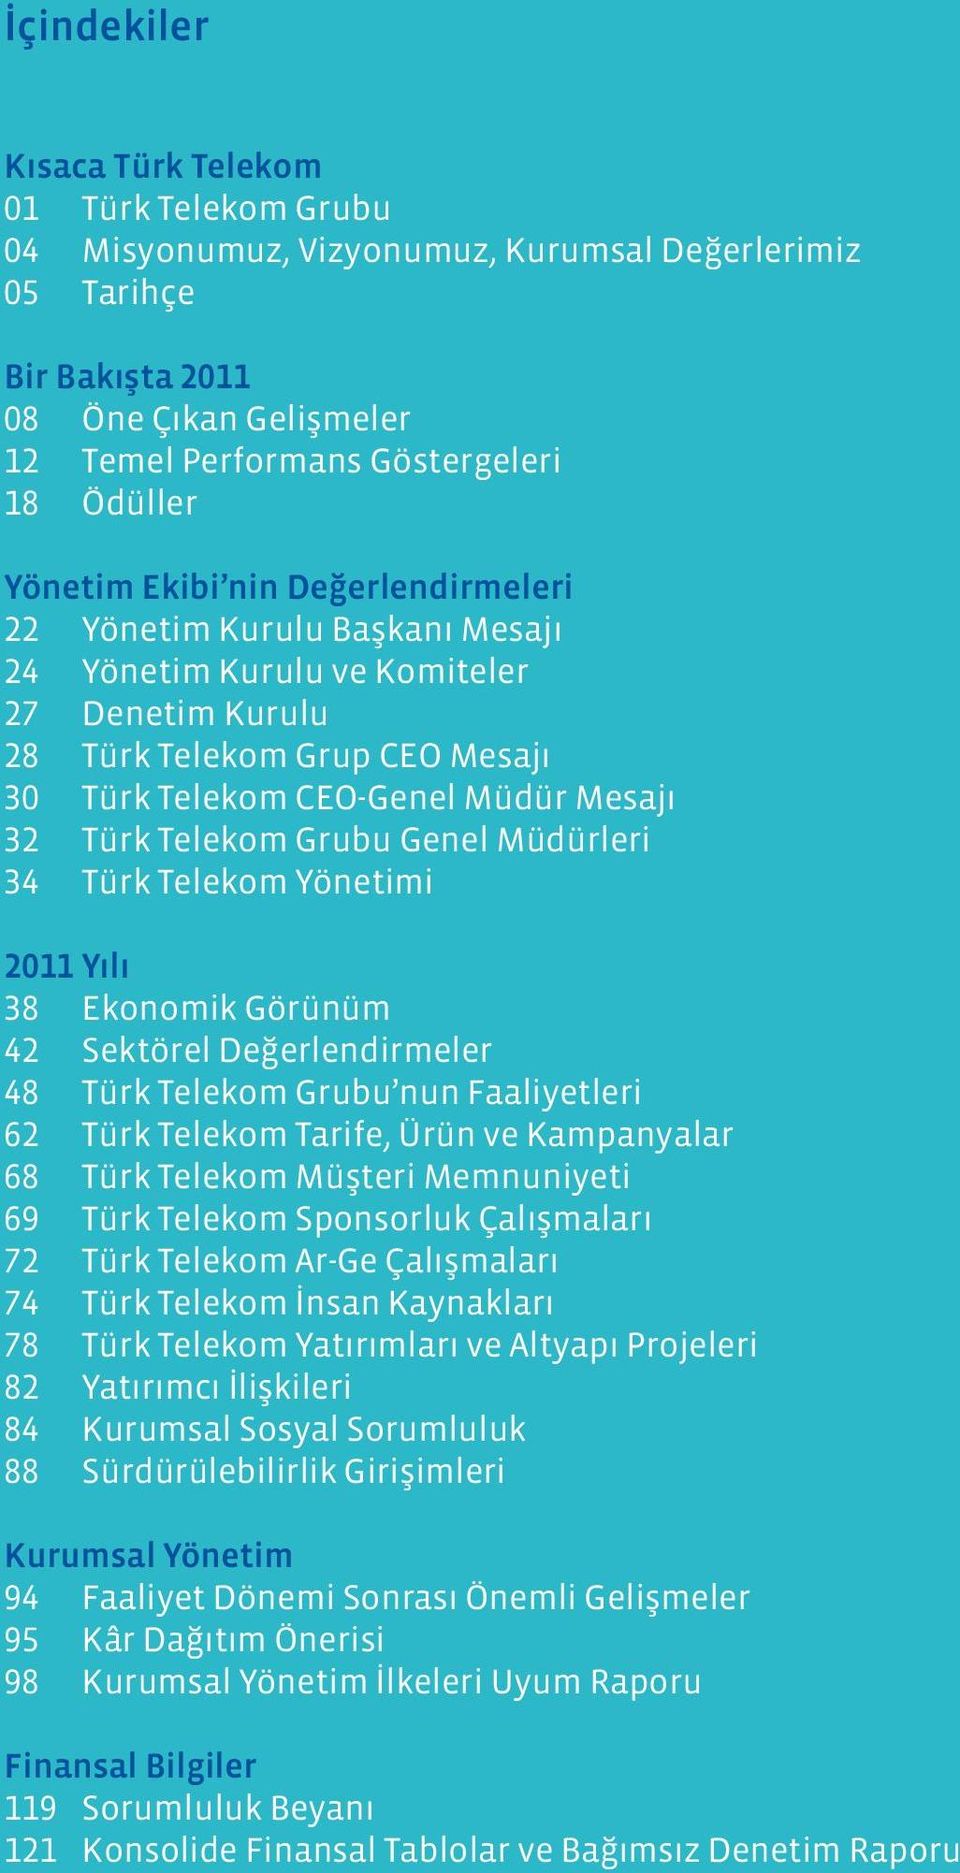 Telekom Grubu Genel Müdürleri 34 Türk Telekom Yönetimi 2011 Yılı 38 Ekonomik Görünüm 42 Sektörel Değerlendirmeler 48 Türk Telekom Grubu nun Faaliyetleri 62 Türk Telekom Tarife, Ürün ve Kampanyalar 68